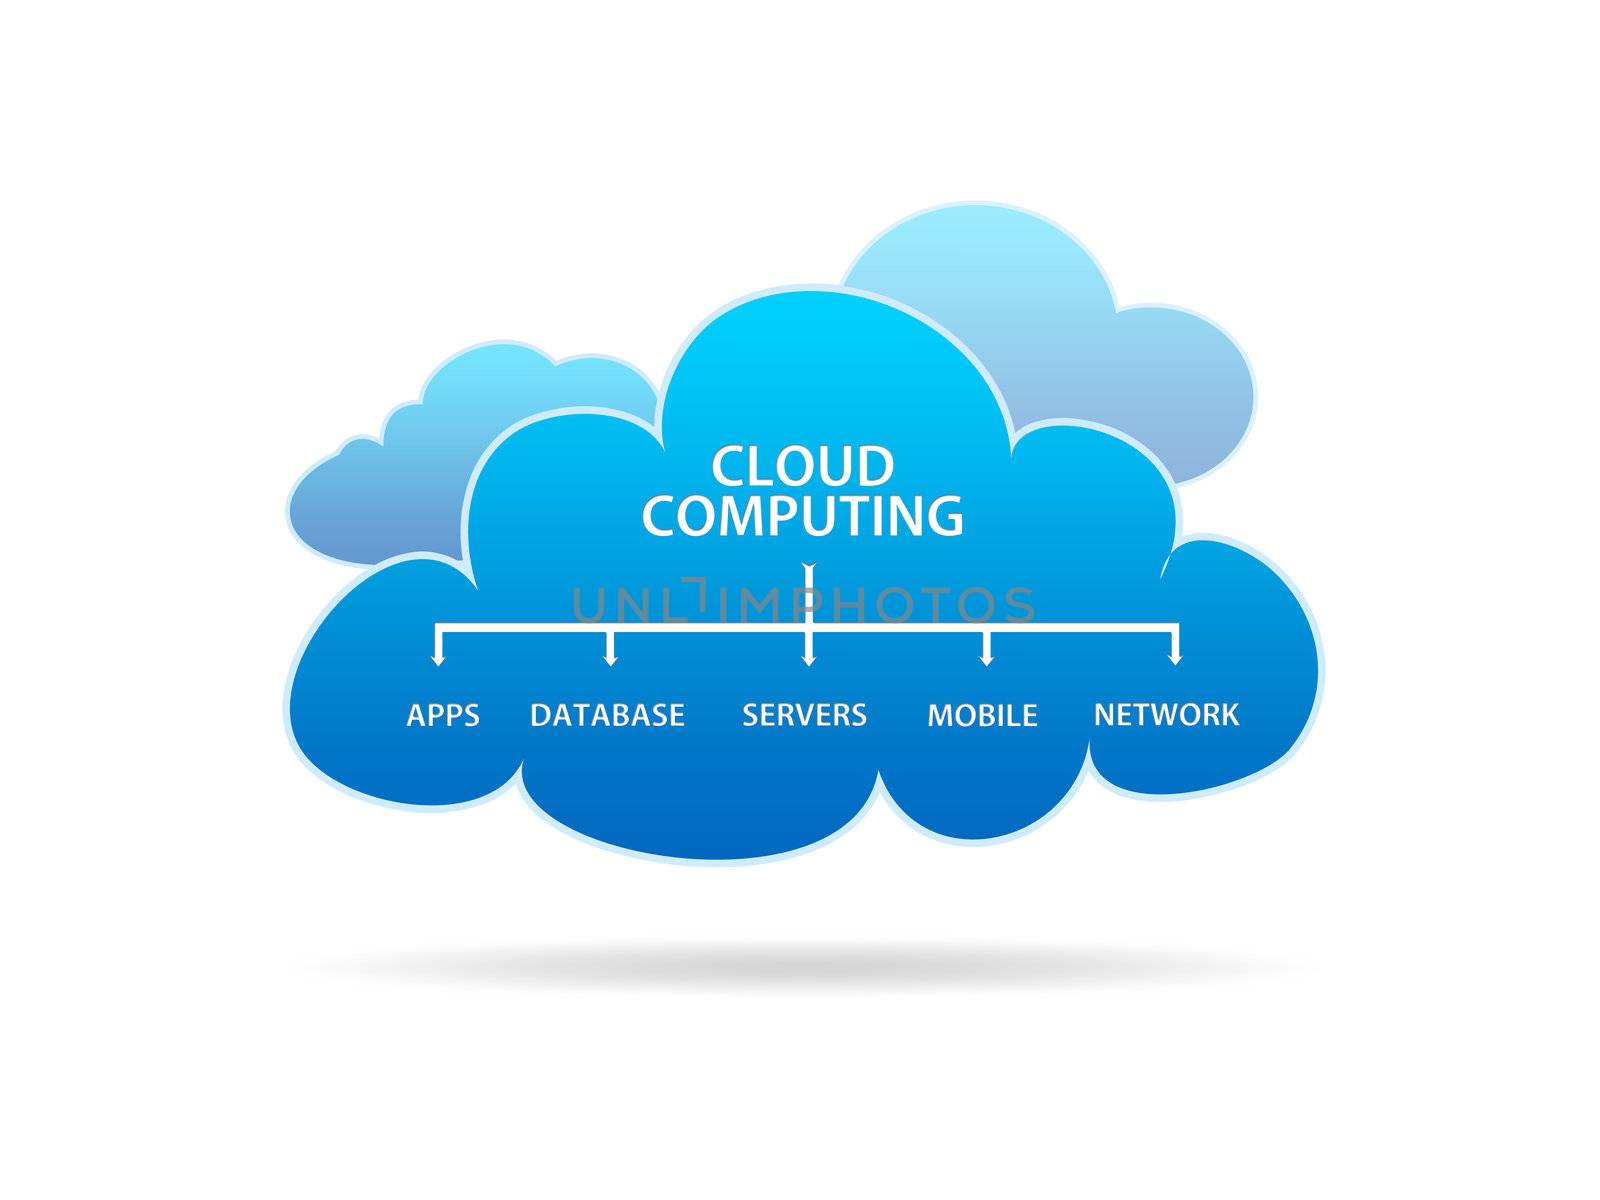 Cloud Computing by kbuntu